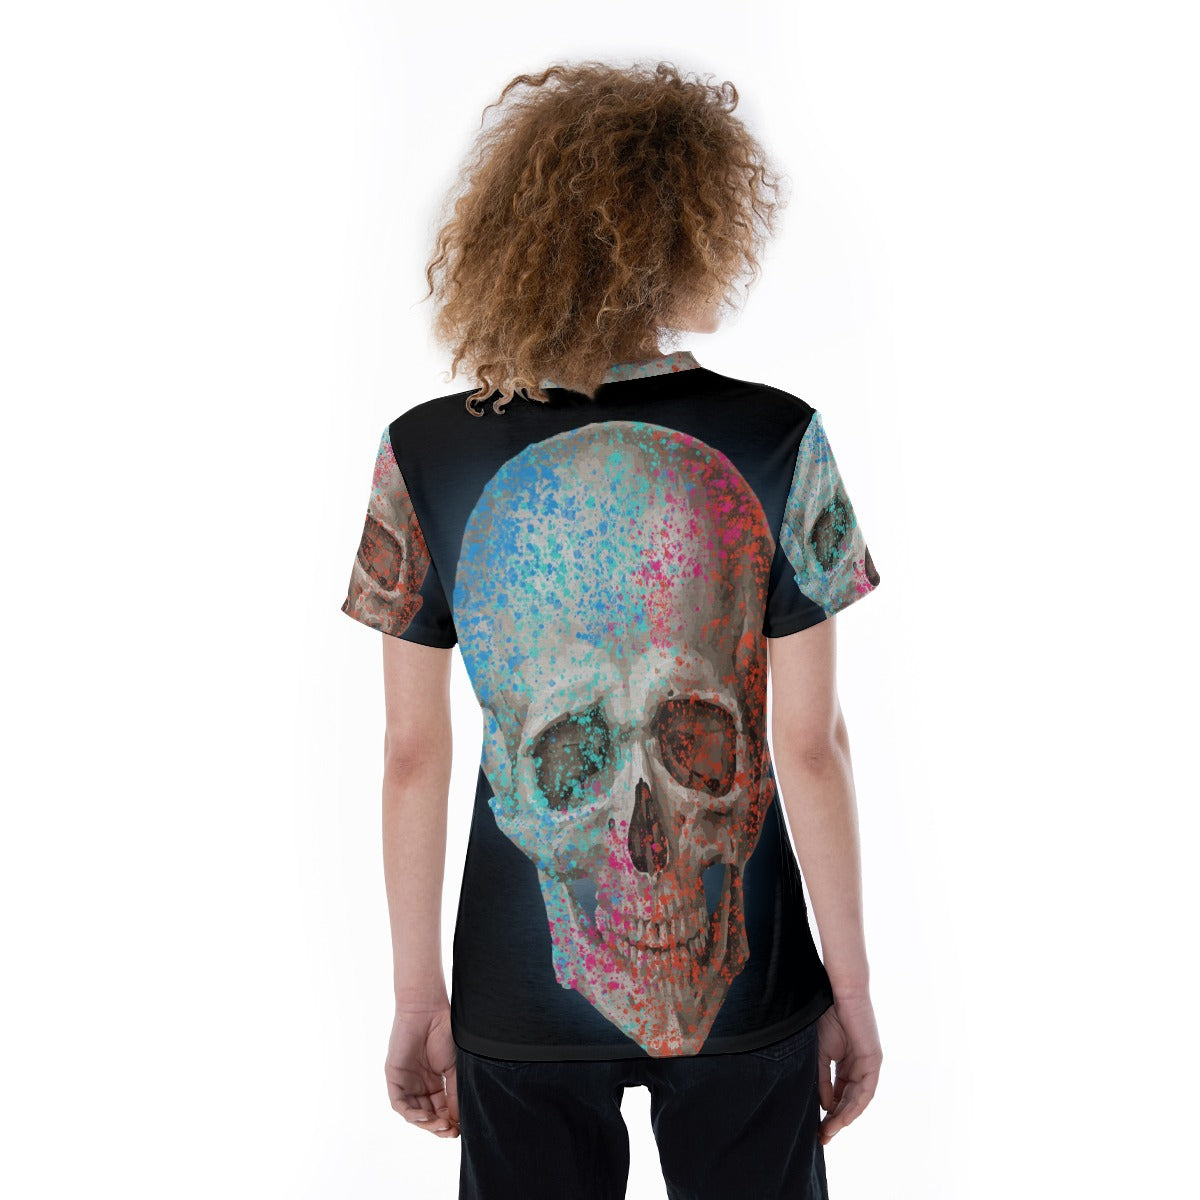 Halloween Day of the dead V-neck Women's T-shirt Skeleton